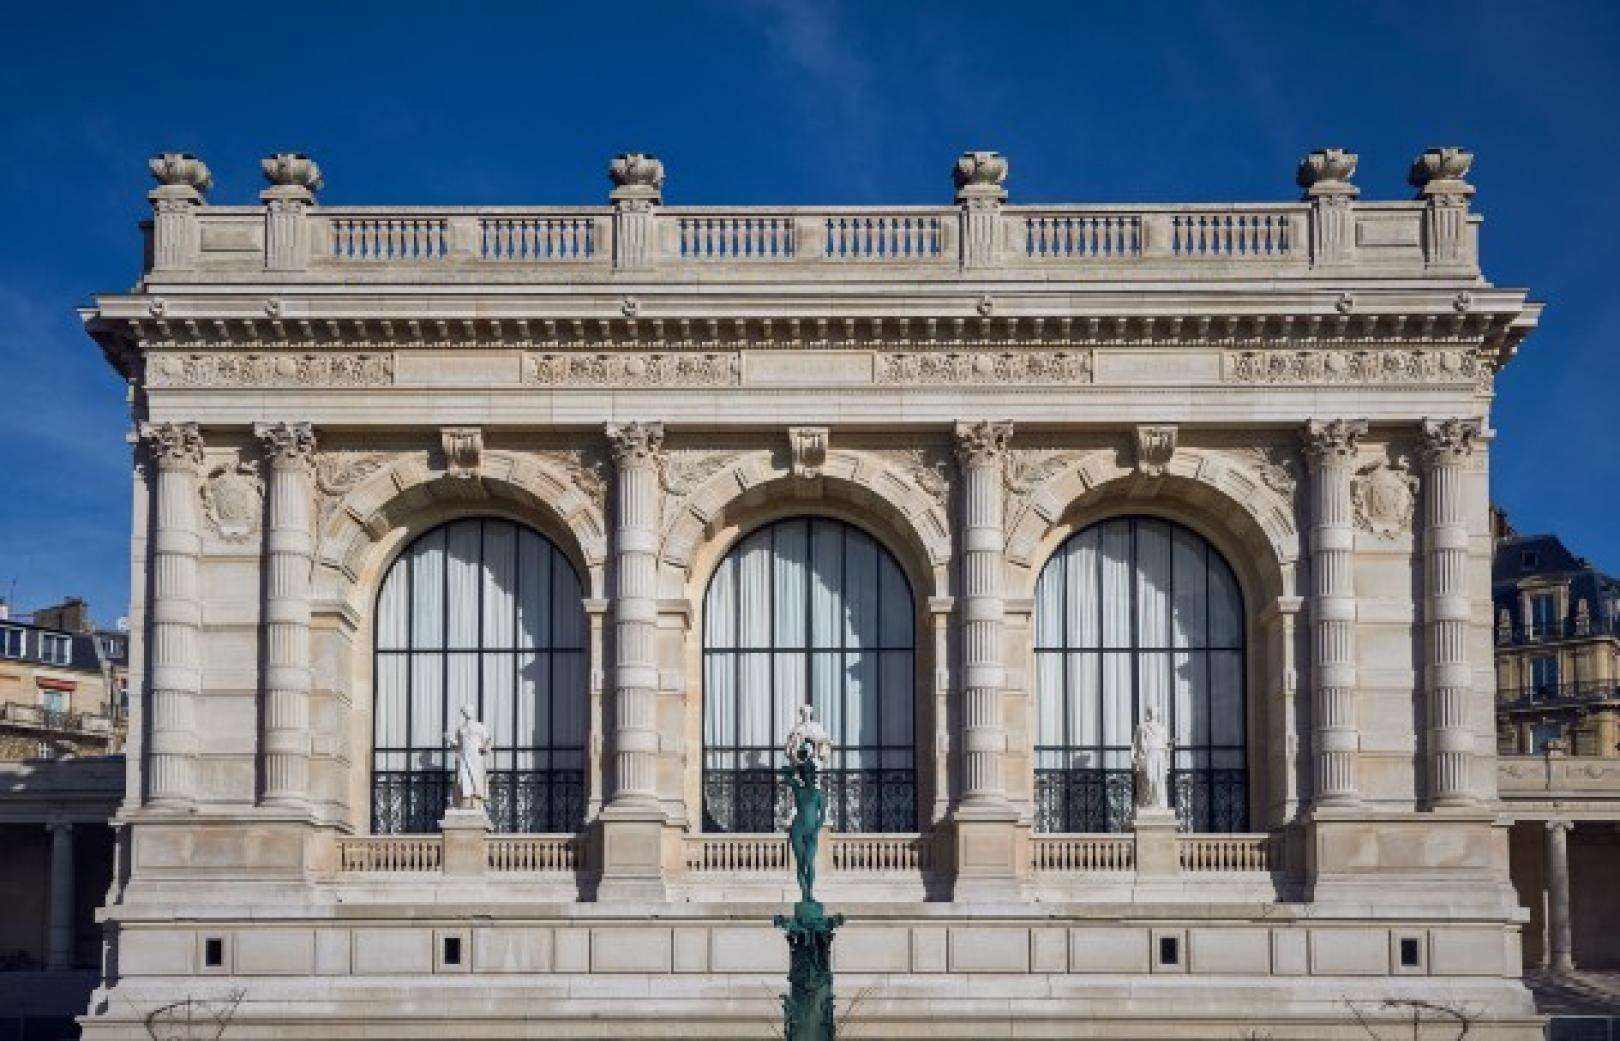 A history of fashion at the Palais Galliera